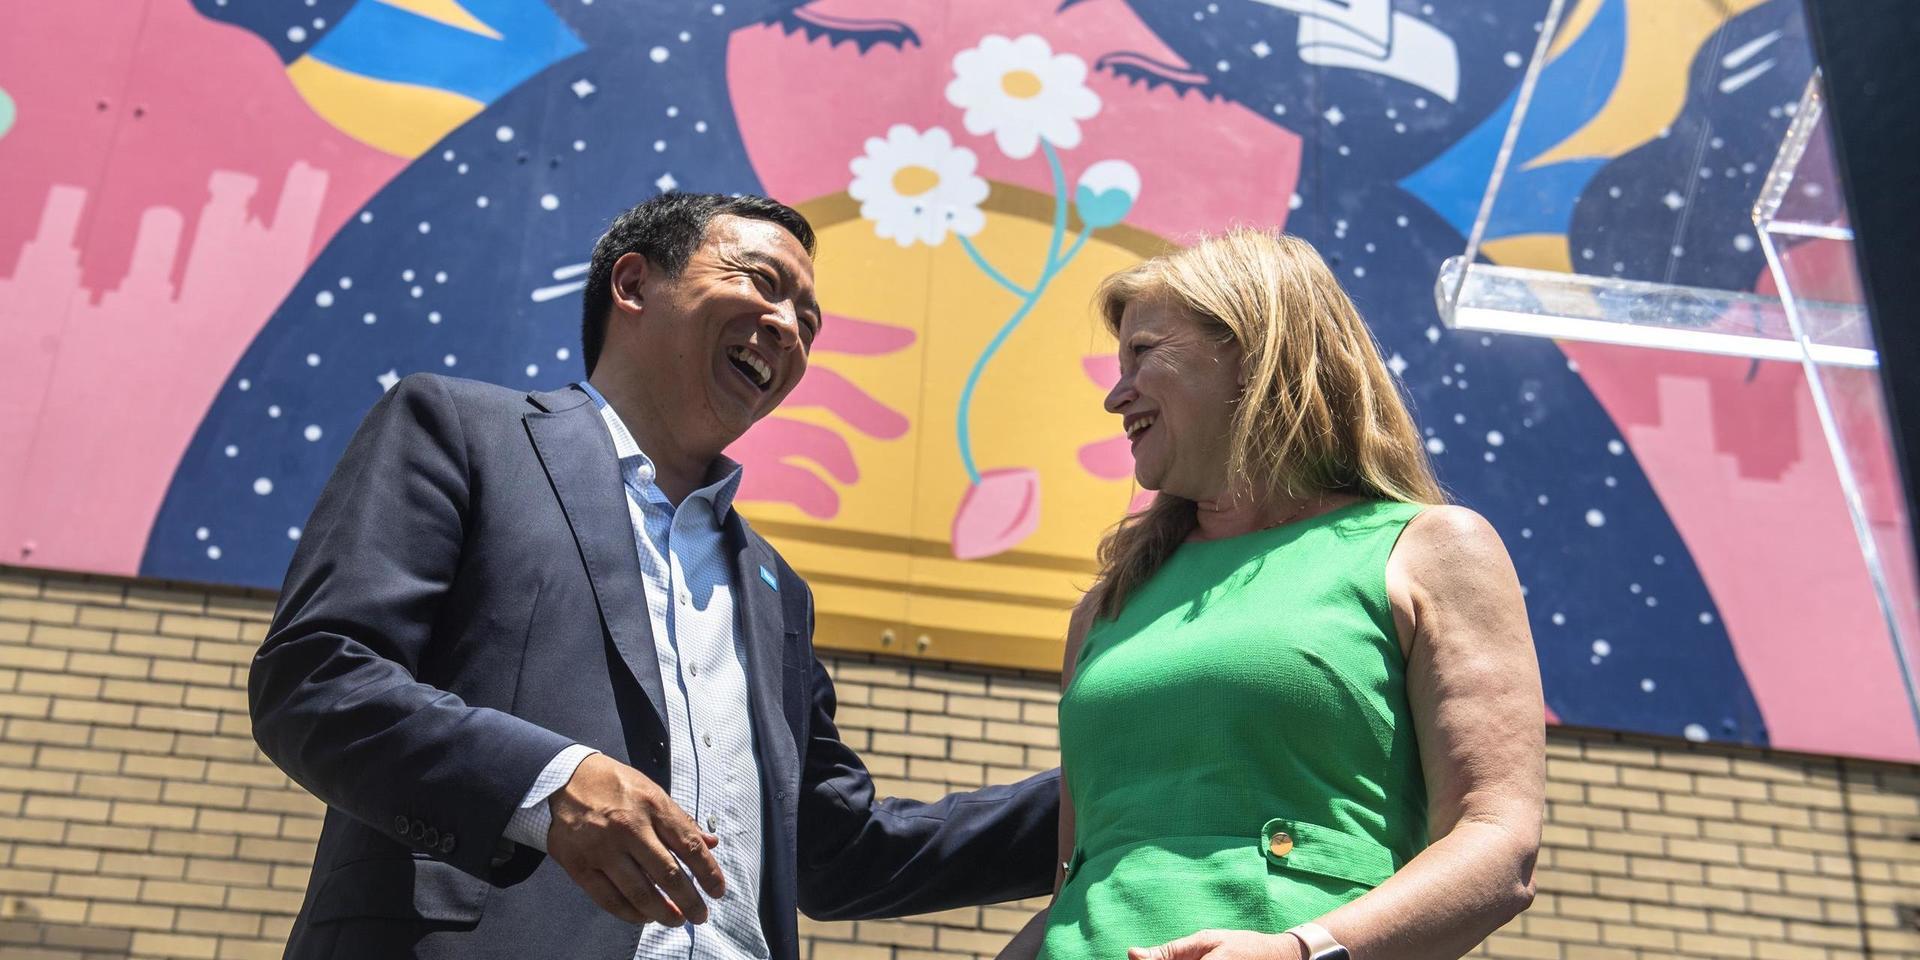 De demokratiska borgmästaraspiranterna Andrew Yang och Kathryn Garcia kampanjar i New York.